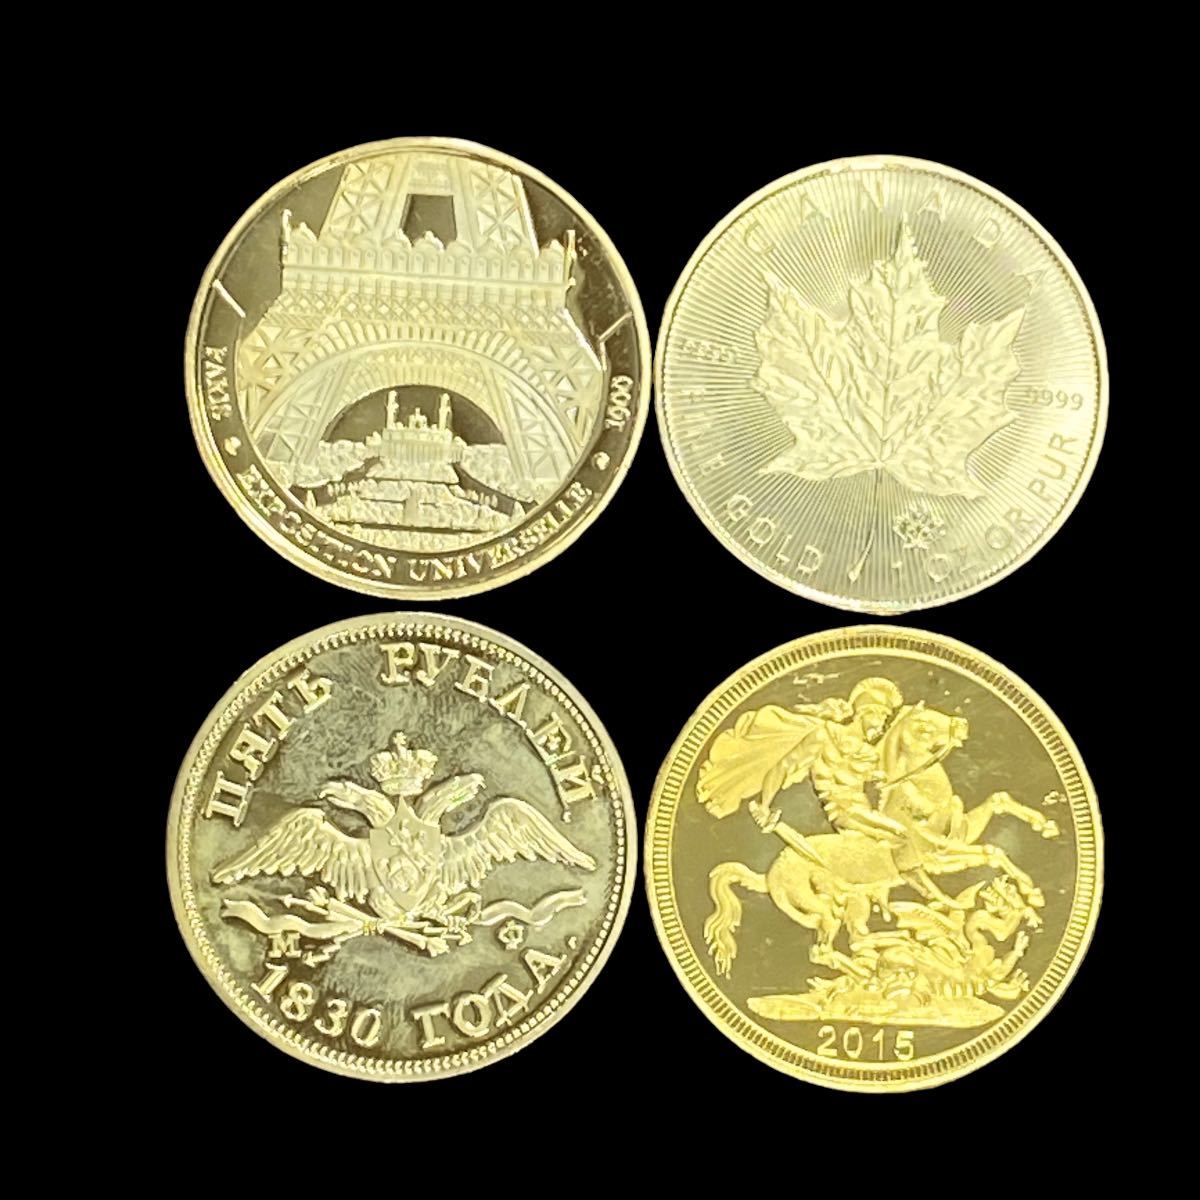 外国金貨 フランス パリ エッフェル塔 CANADA メープルリーフ金貨 1oz FINE GOLD イギリス エリザベス2世 2015 1830年 ロシア 4枚おまとめ _画像2